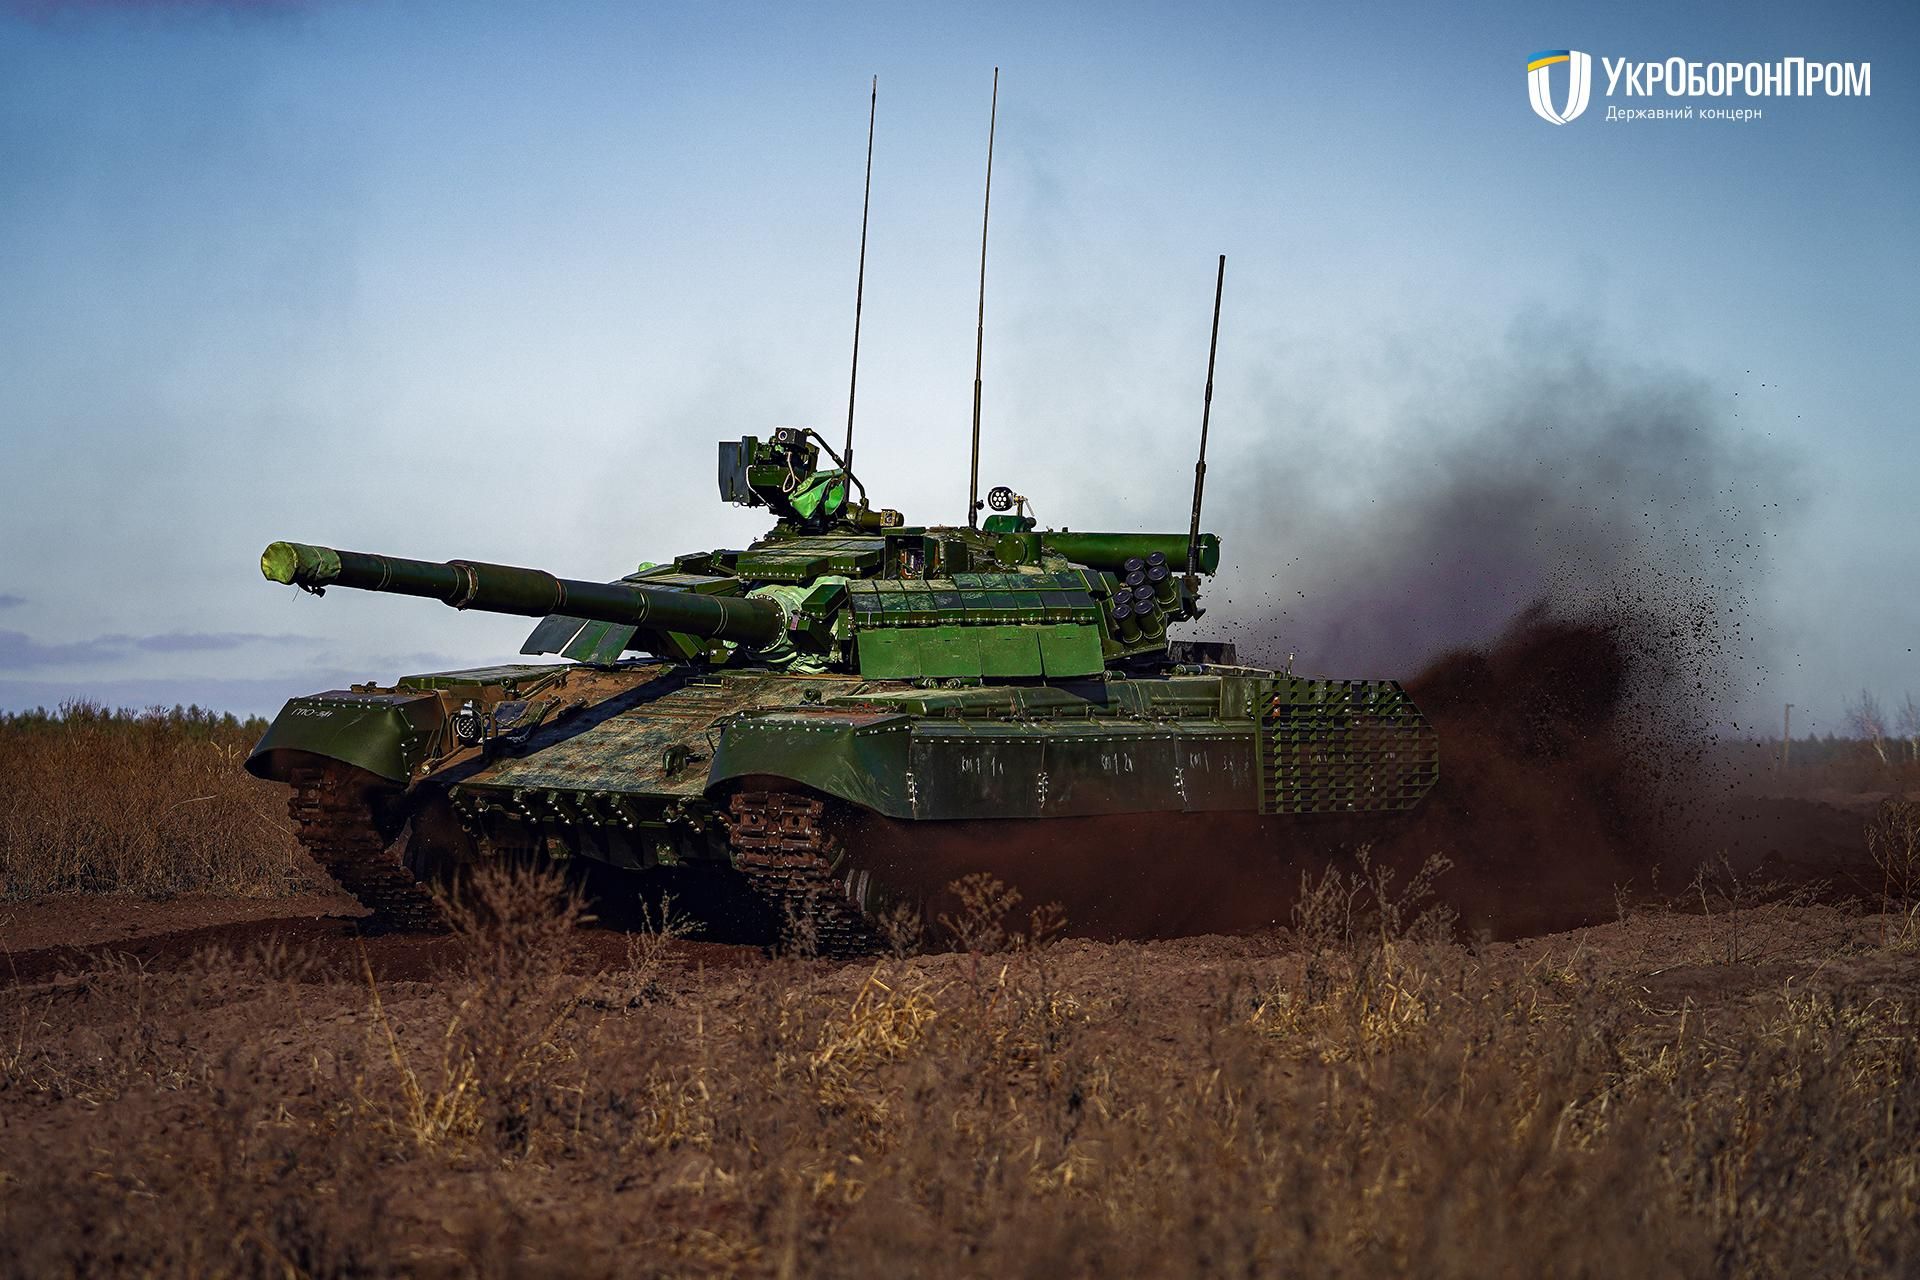 Завод Укроборонпрому вперше оновив командирський танк Т-64БВК: потужне відео - Україна новини - 24 Канал